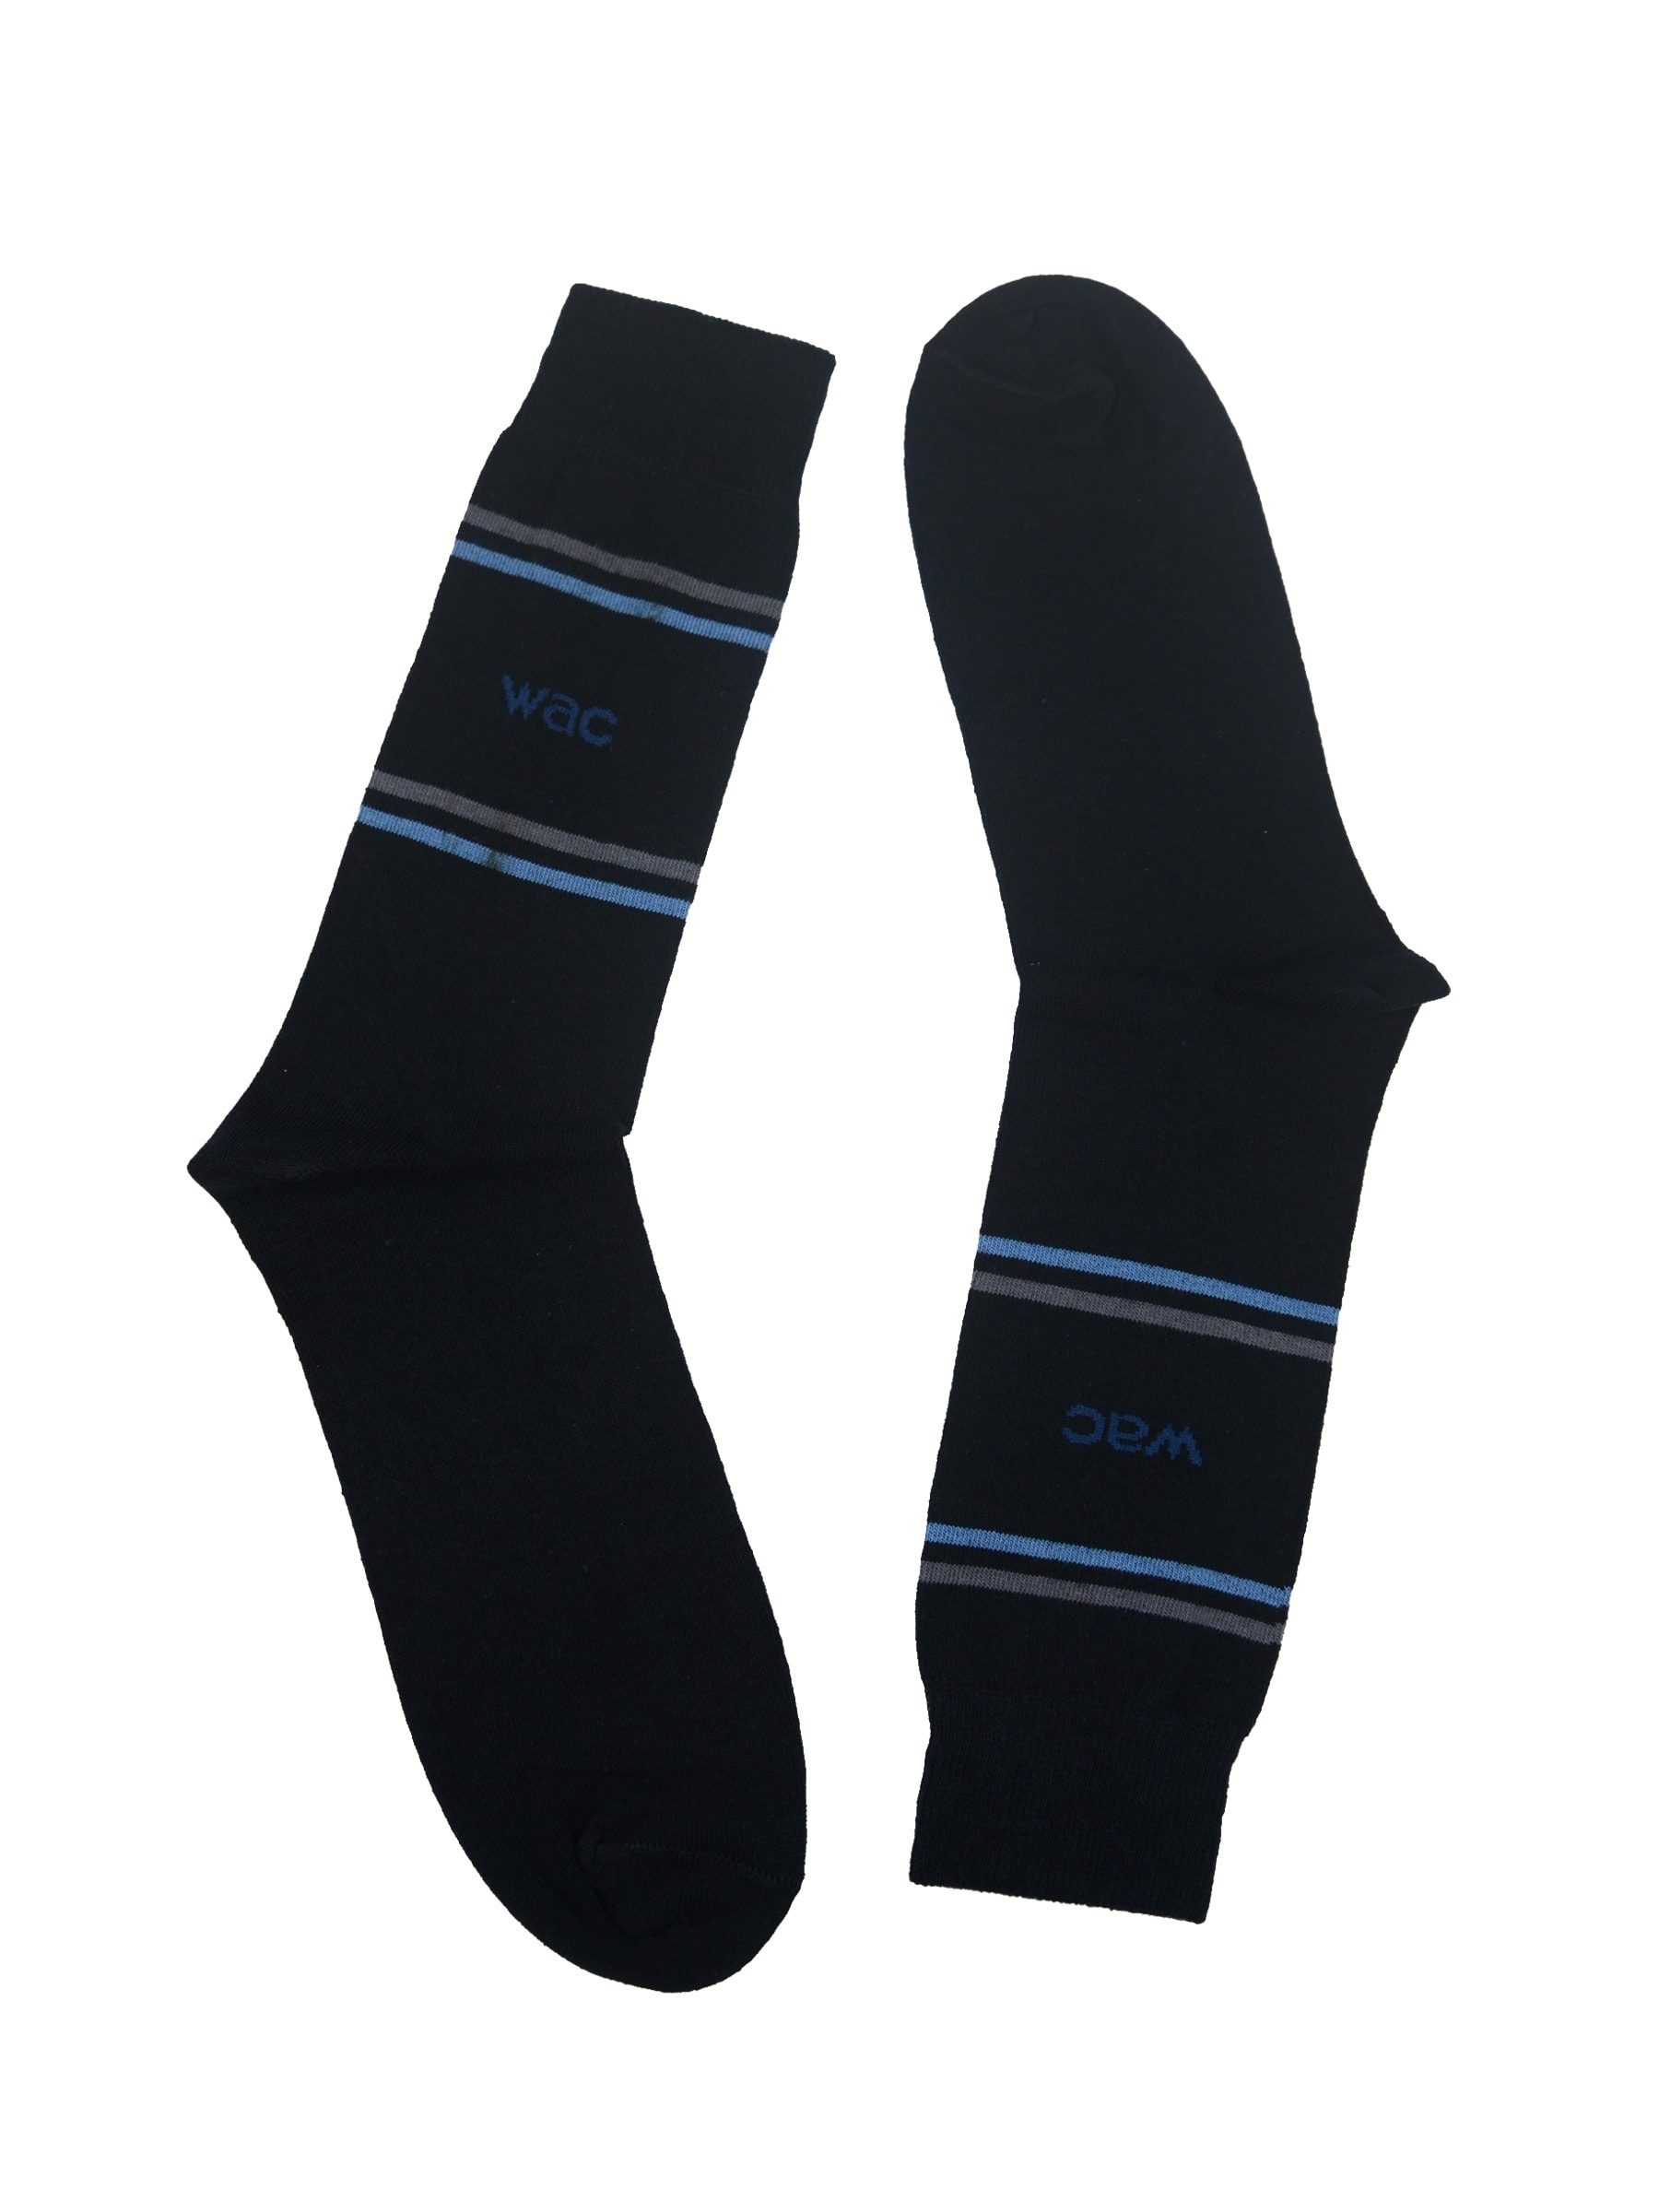 Wrangler Men's Navy Crew Length Socks